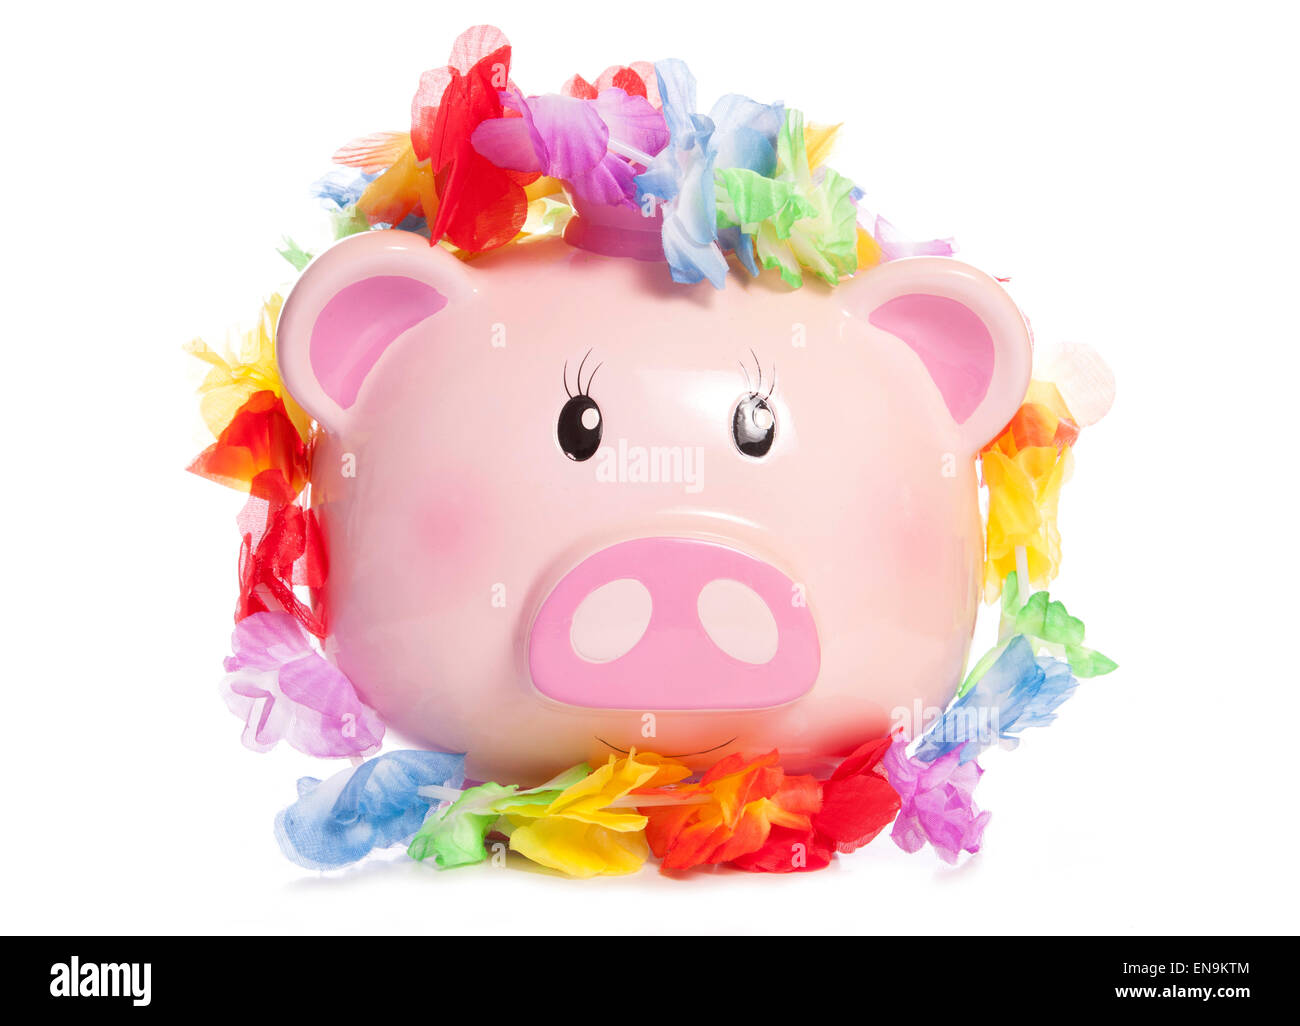 Piggy Bank wearing hawaiian découpe garland Banque D'Images